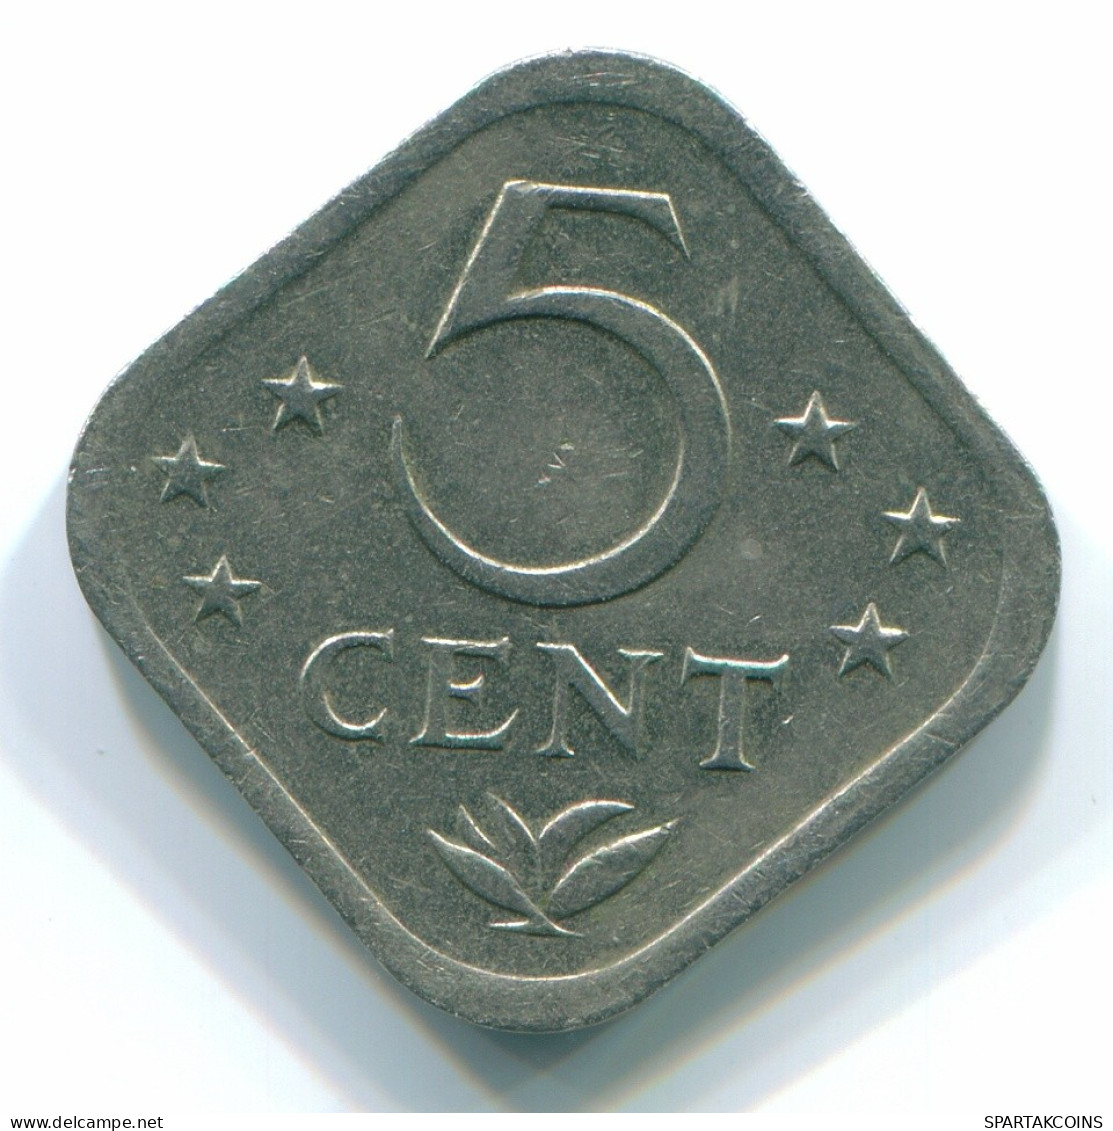 5 CENTS 1982 NETHERLANDS ANTILLES Nickel Colonial Coin #S12362.U.A - Niederländische Antillen